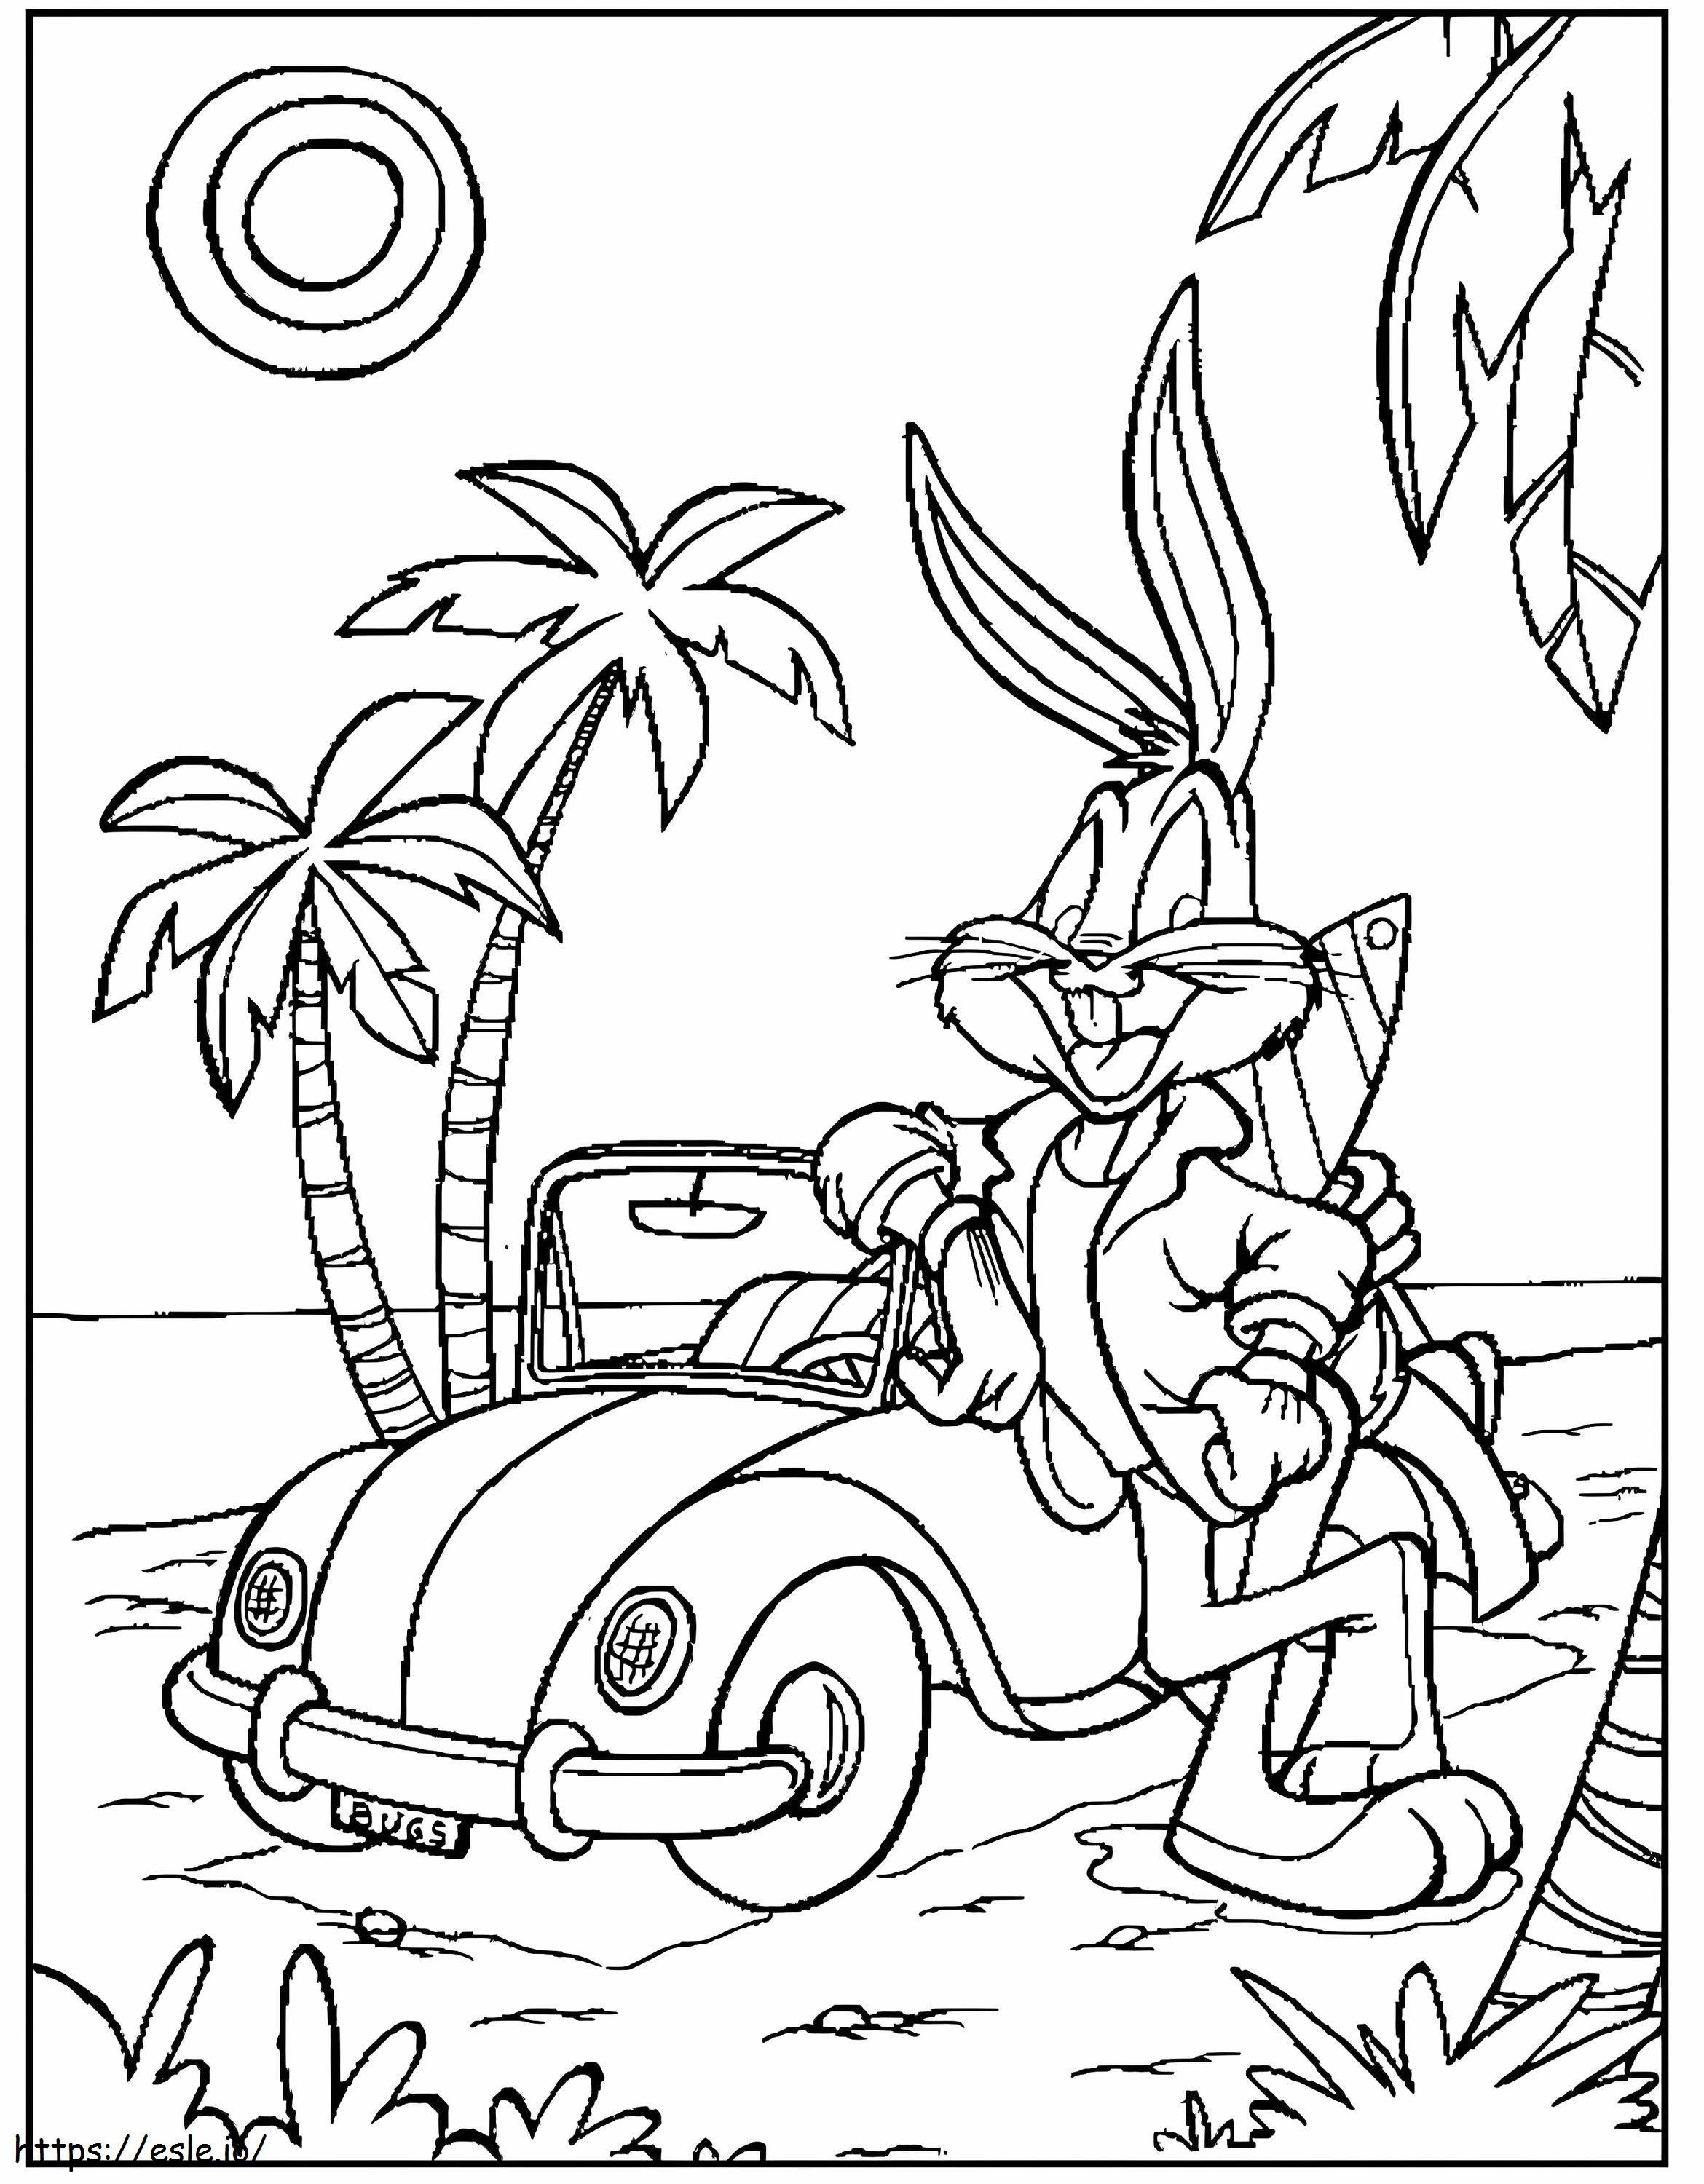 Coloriage Bugs Bunny avec voiture sur la plage à imprimer dessin